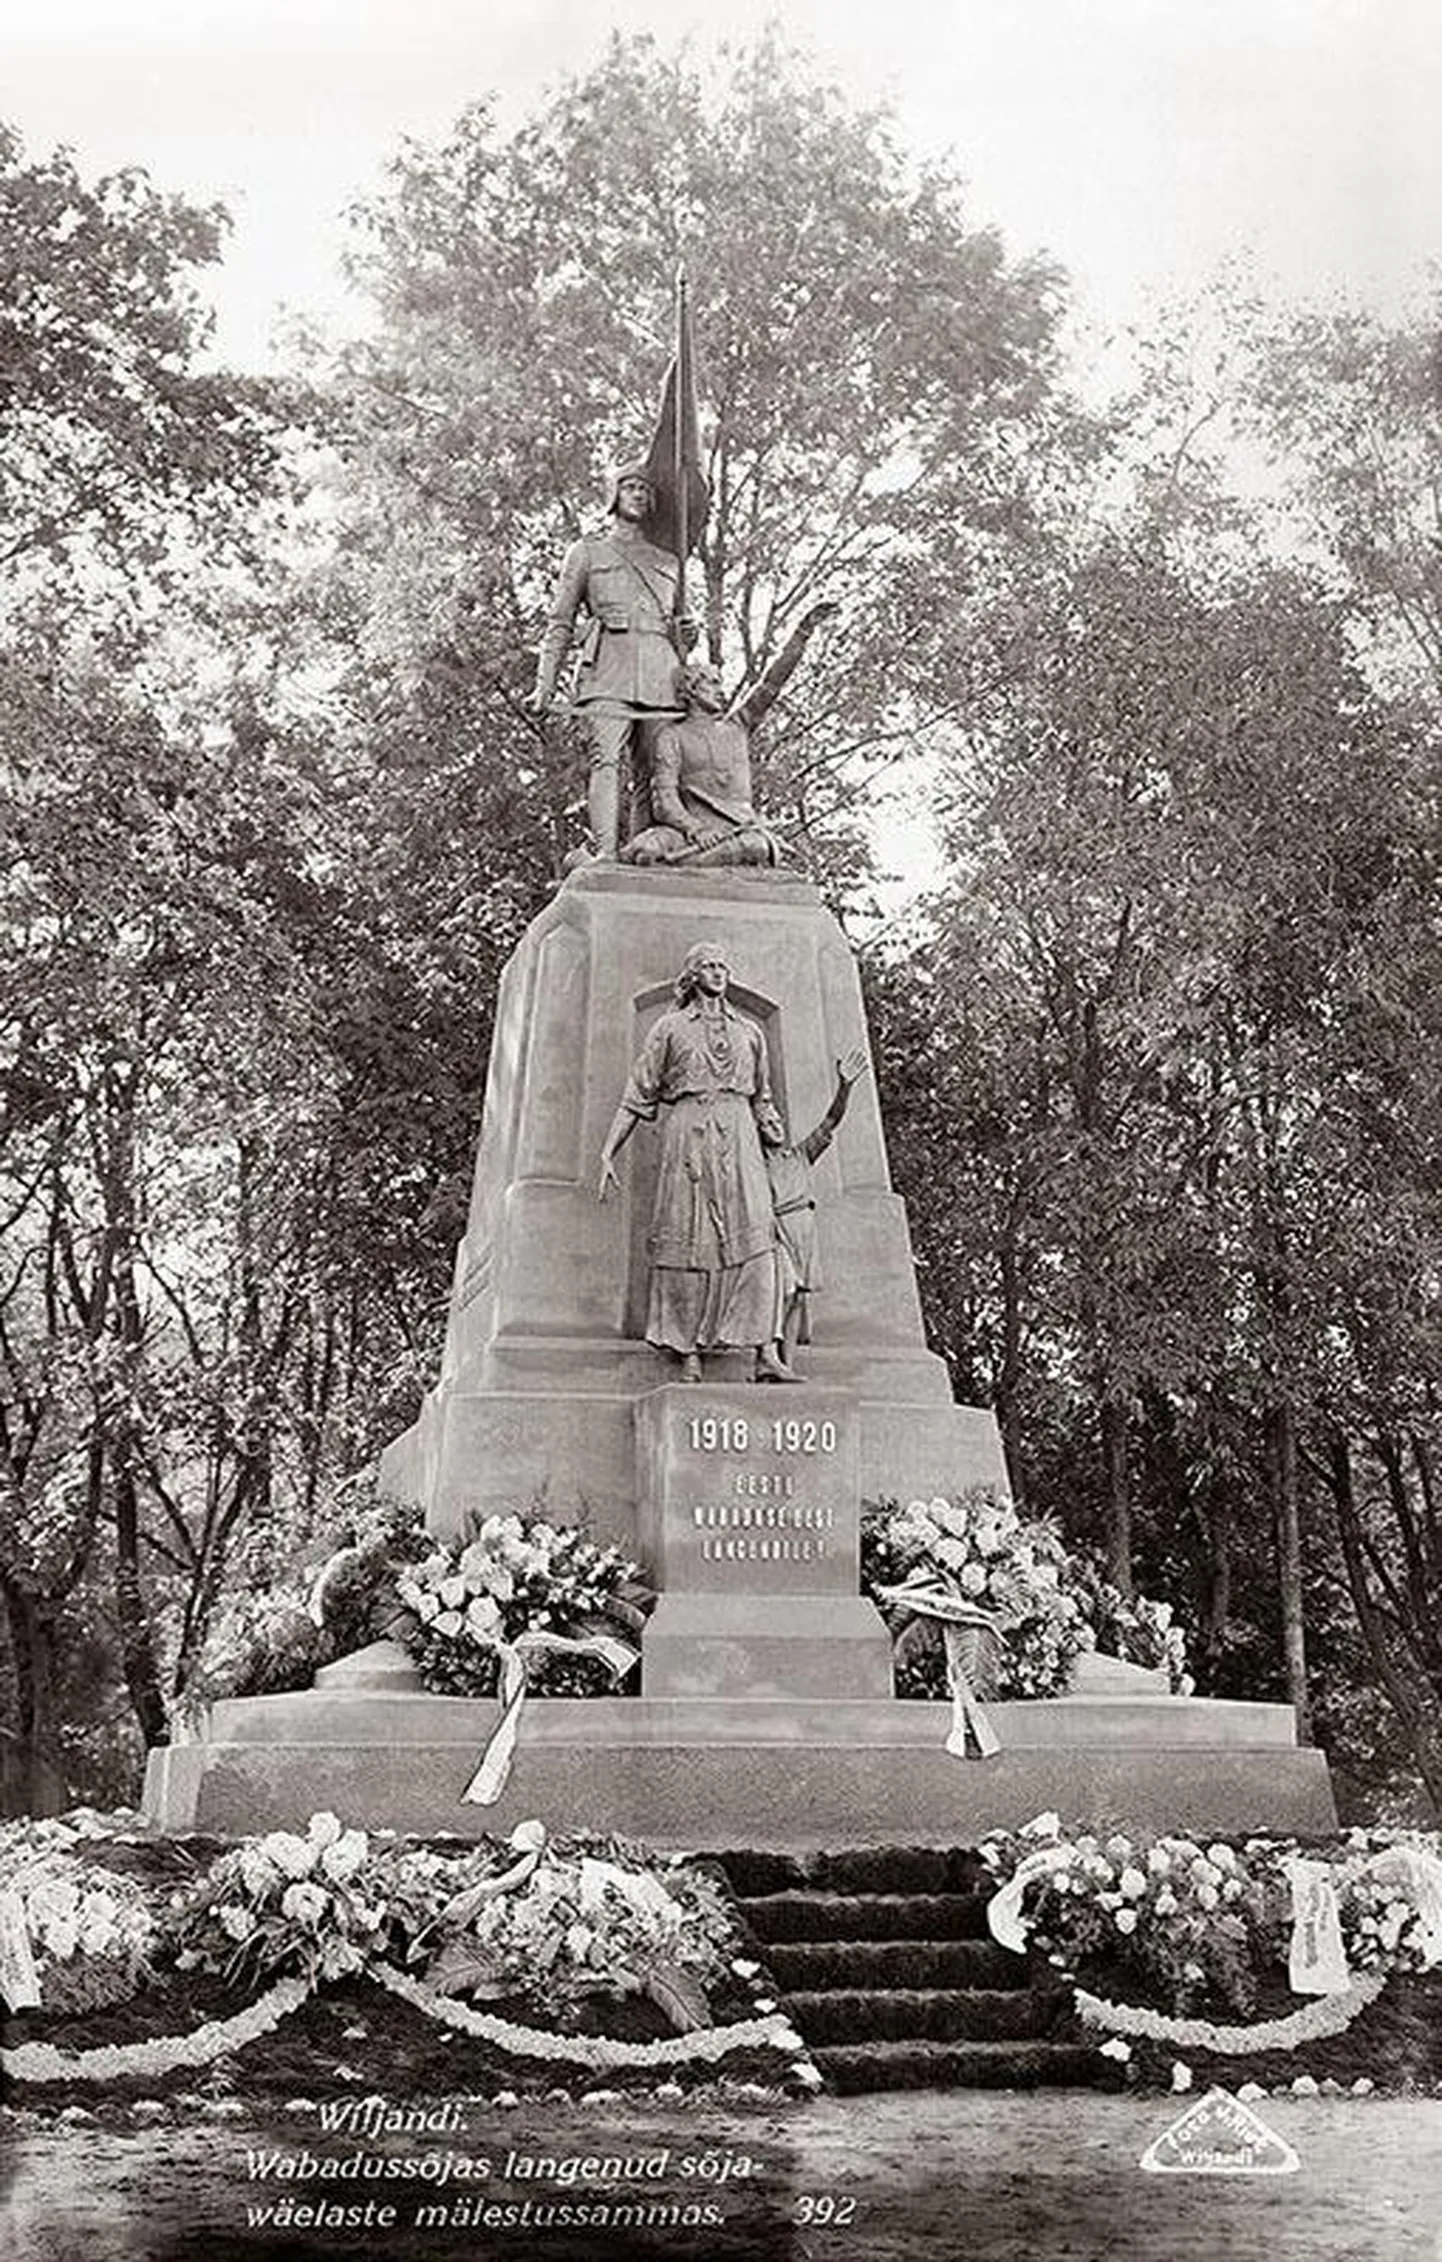 Viljandimaa vabadussõjas langenute mälestussammas avamise järel 19. septembril 1926